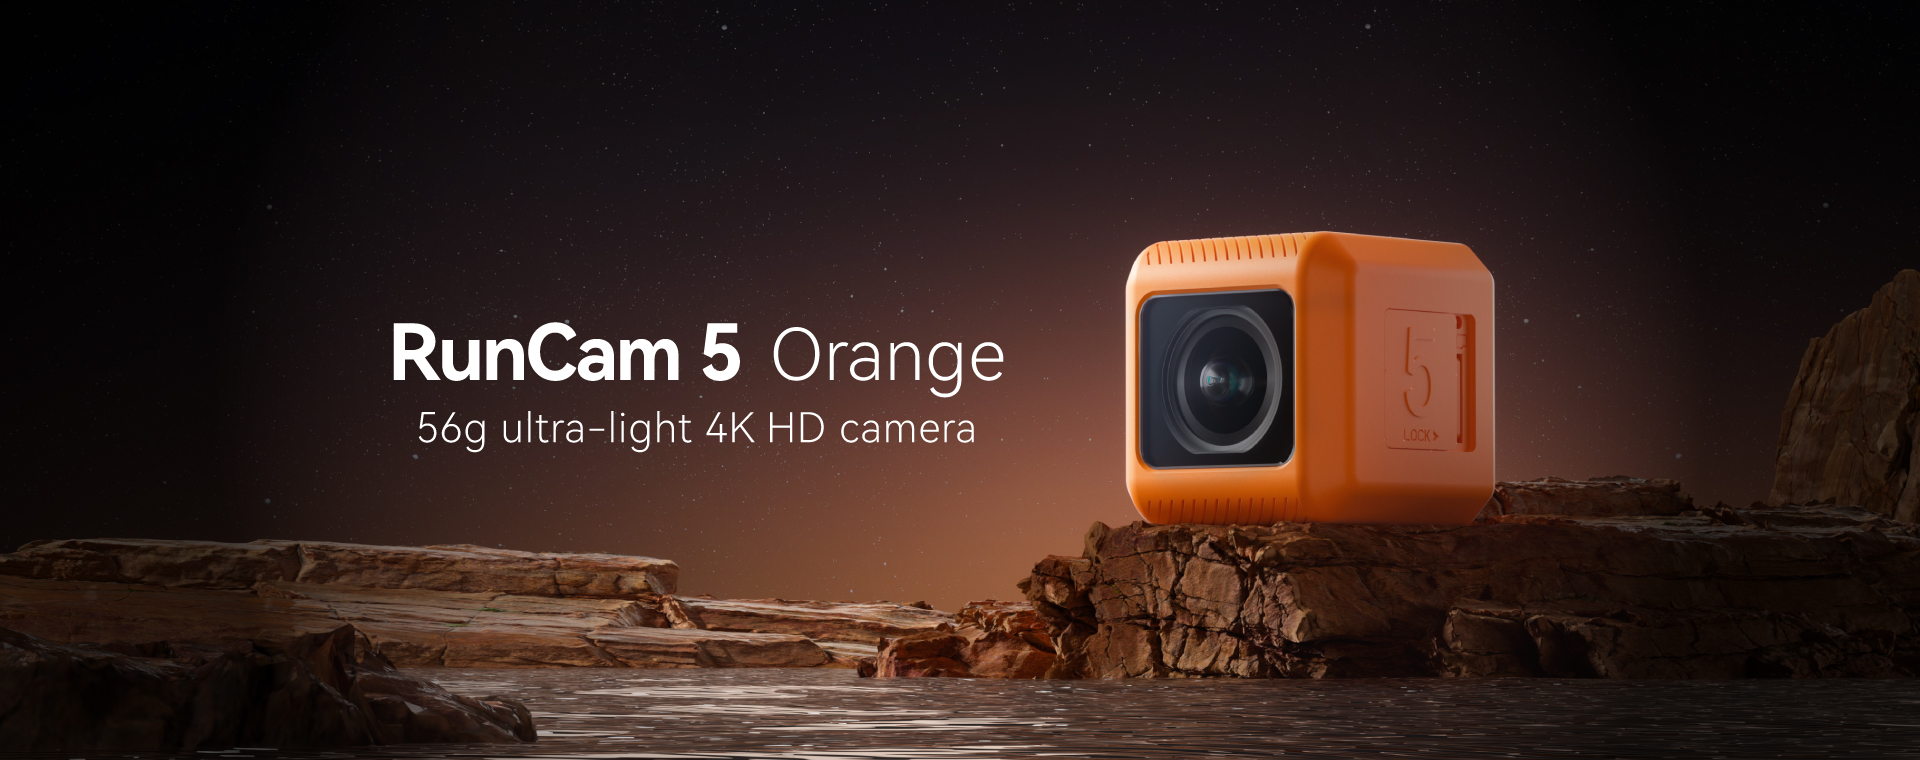 runcam-5-orange